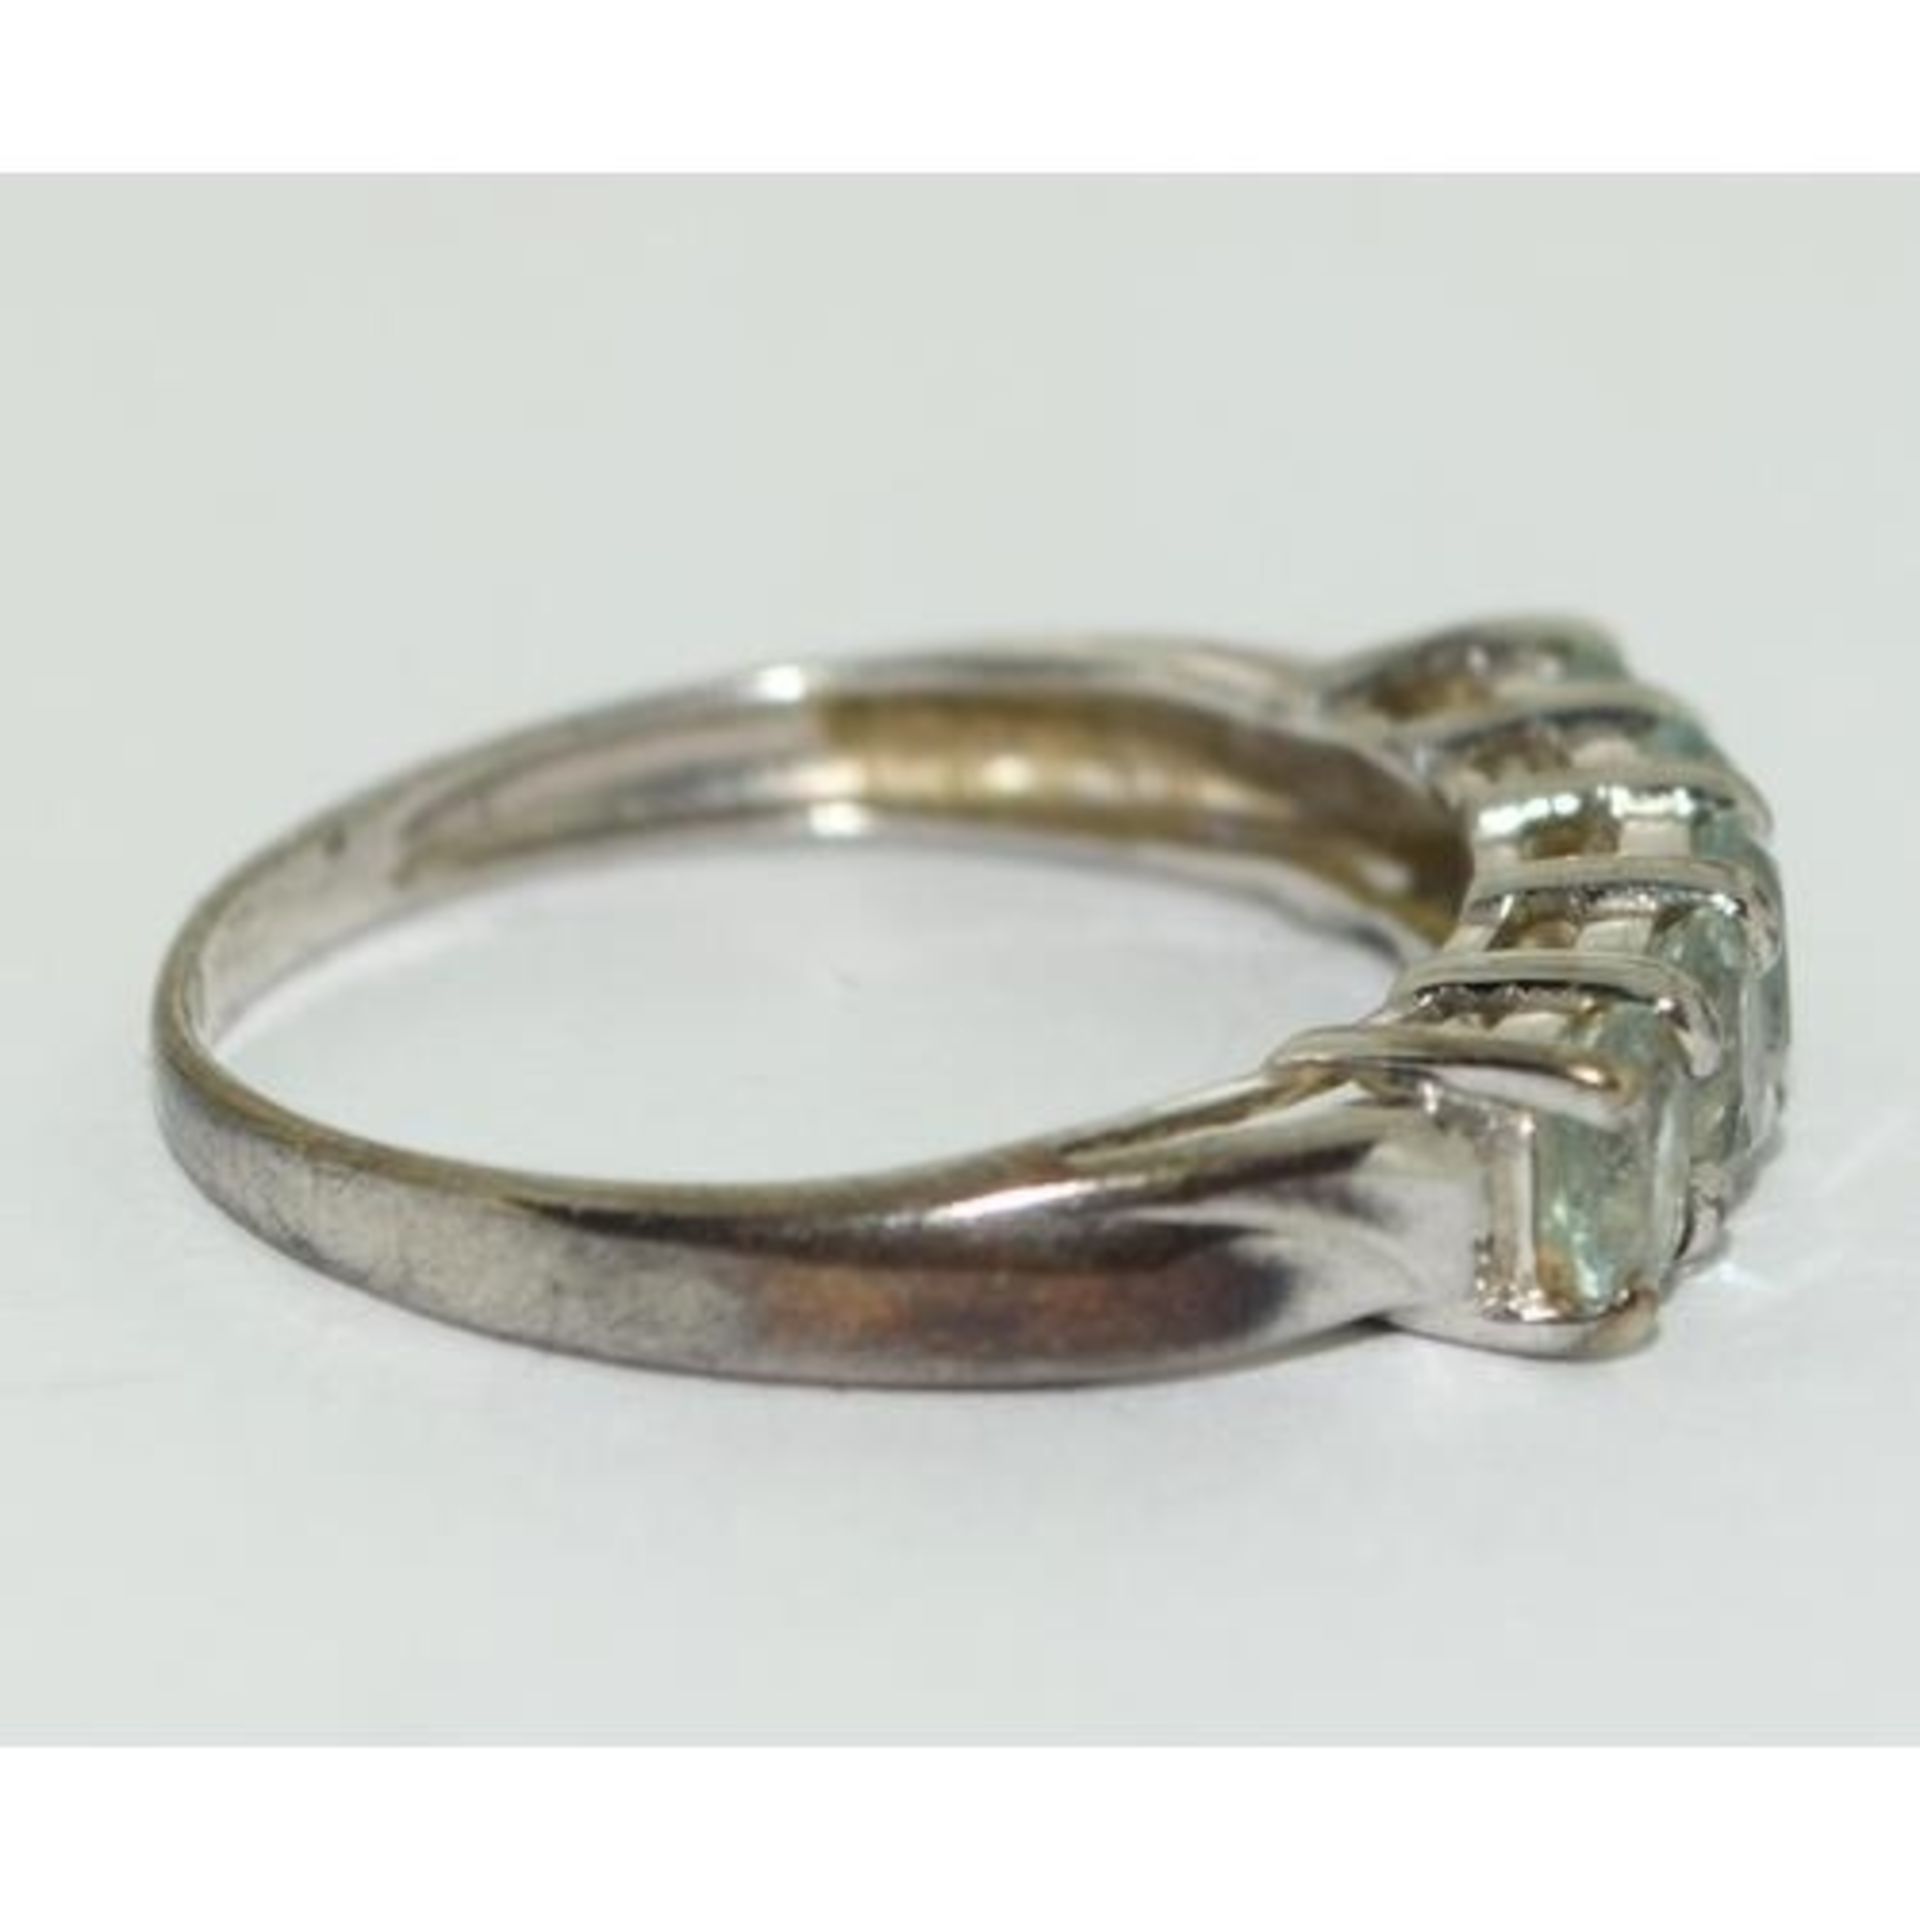 9ct gold ladies 5 stone Aquamarine ring size M - Image 4 of 5